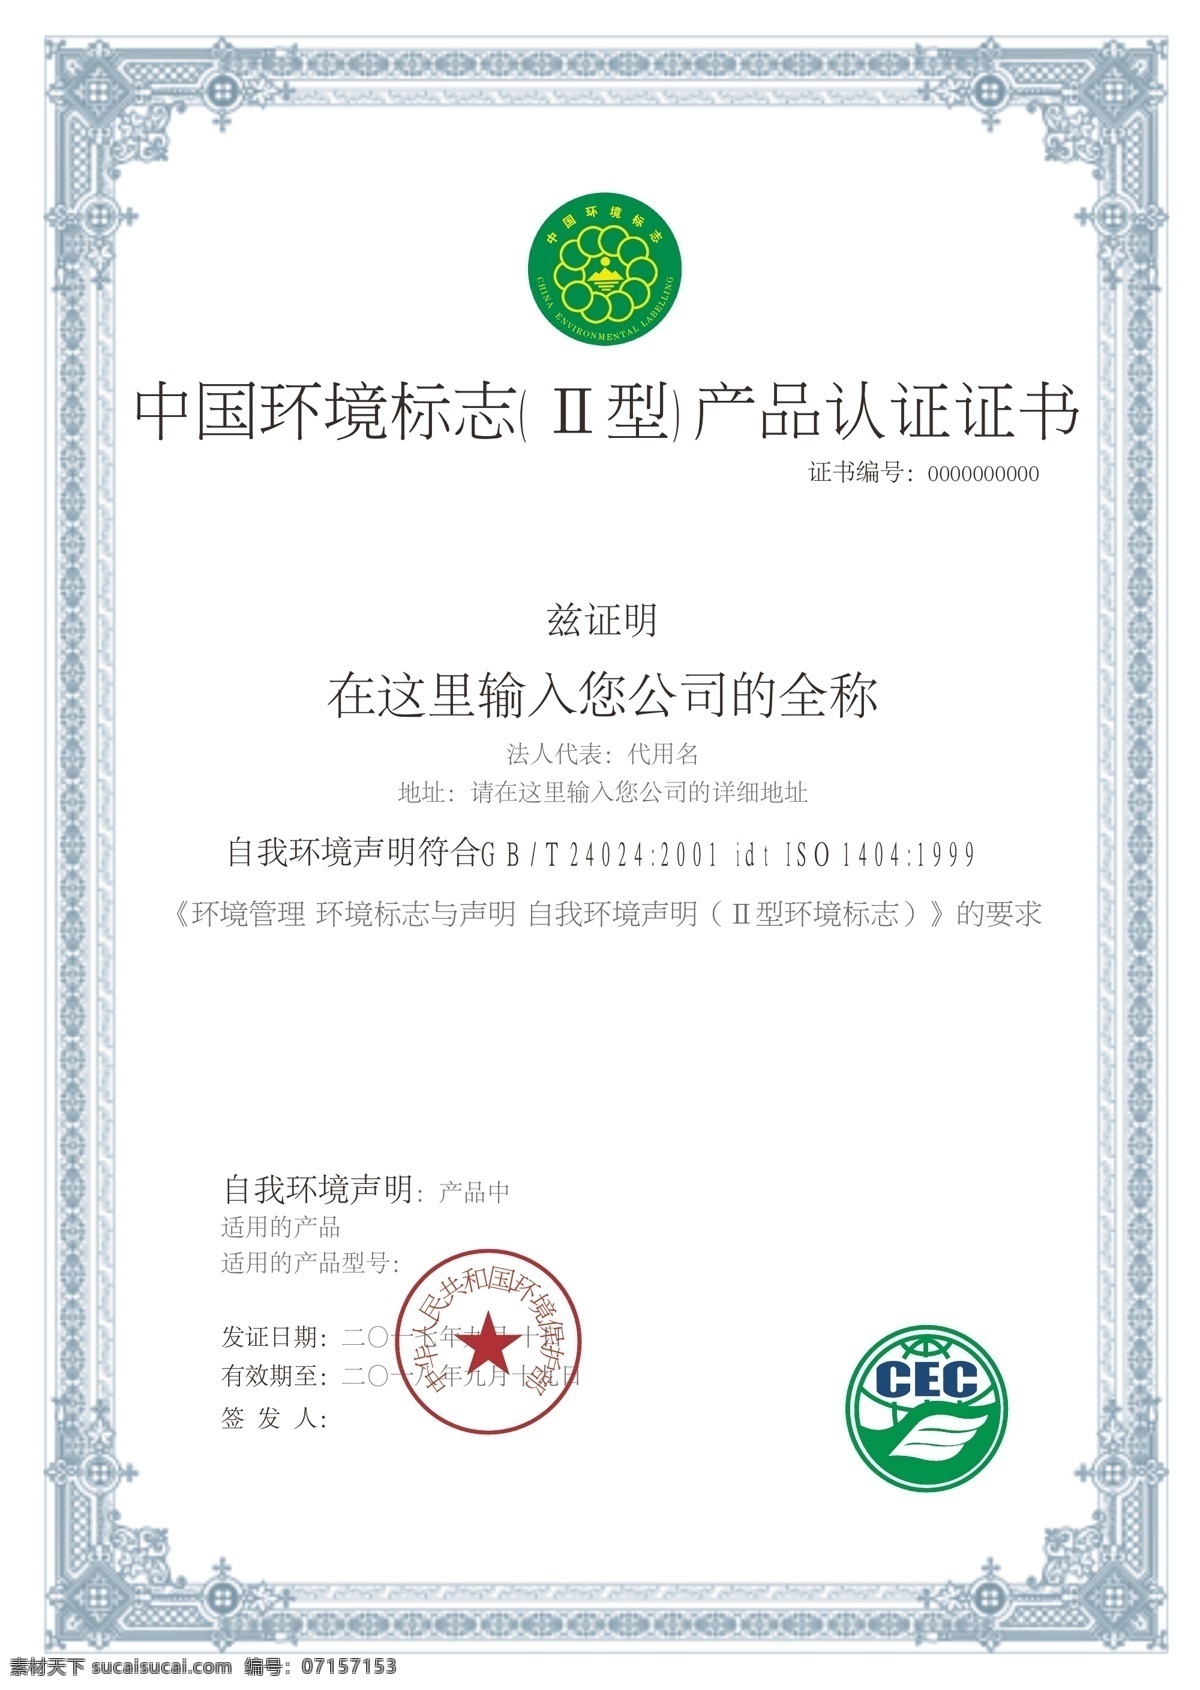 中国 环境标志 产品认证 证书 中国环境标志 证书模版 产品认证证书 标识标志图标 招贴设计